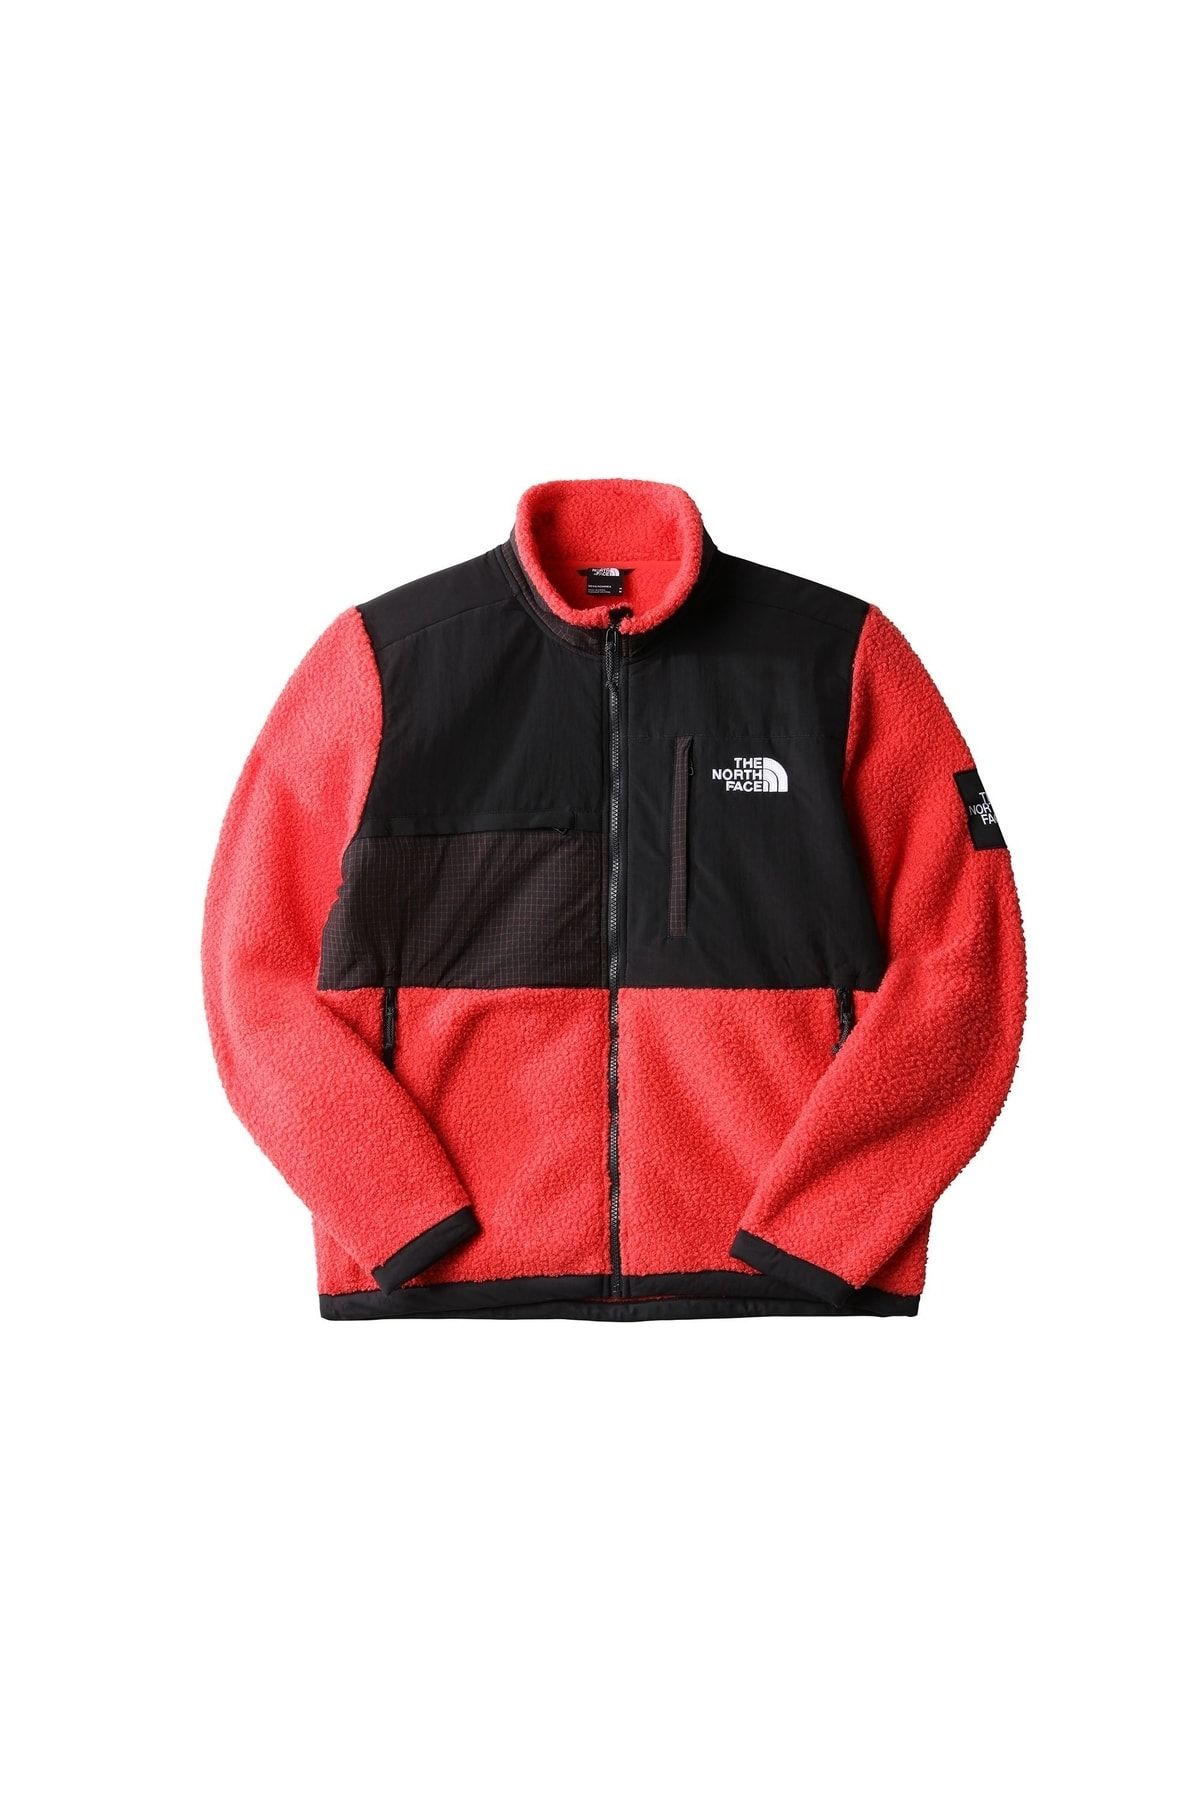 The North Face M Seasonal Denali Jacket Erkek Outdoor Polar Ceket Nf0a7x32v331 Kırmızı